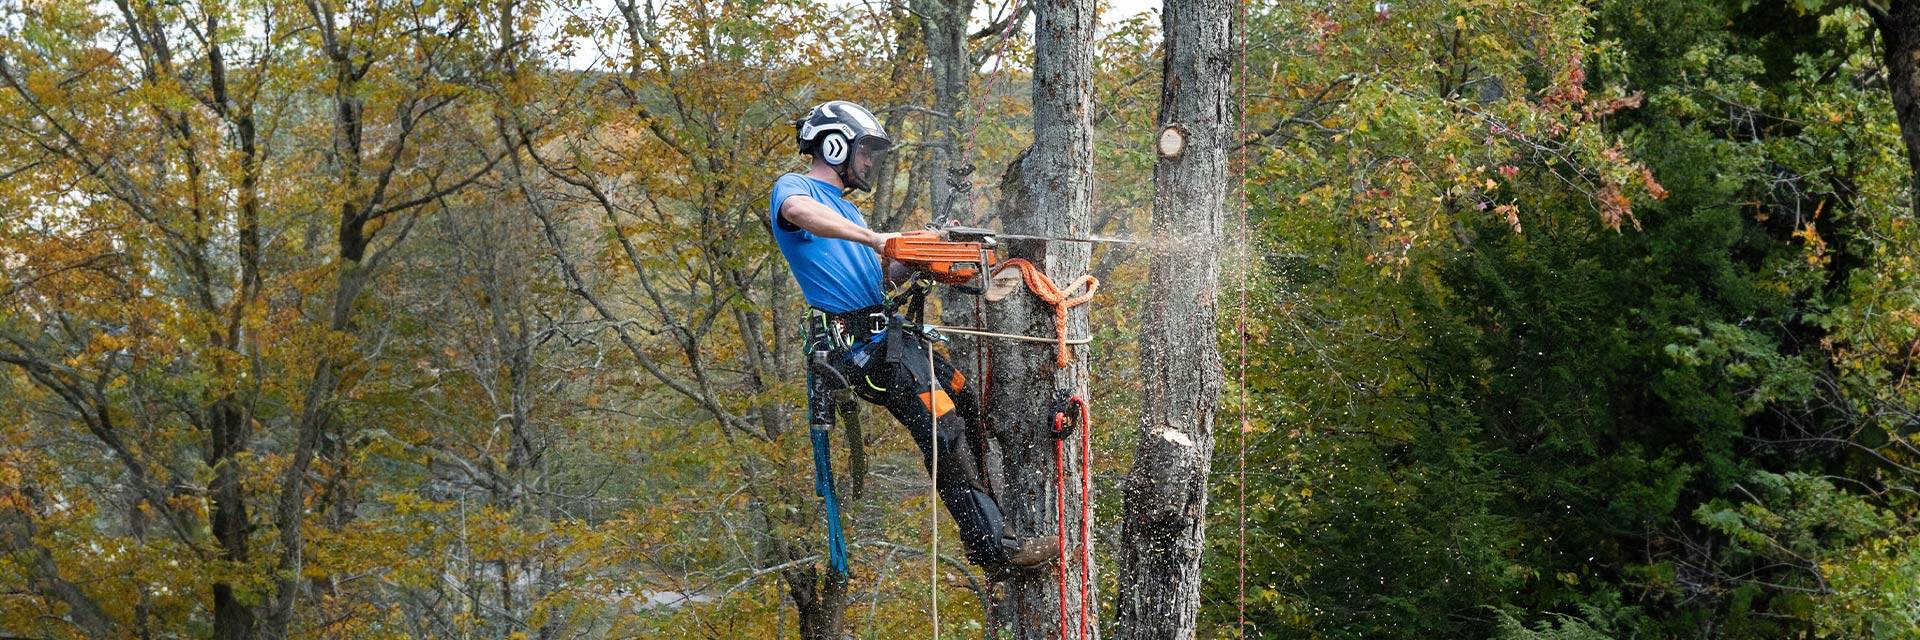 Arborist in tree trimming